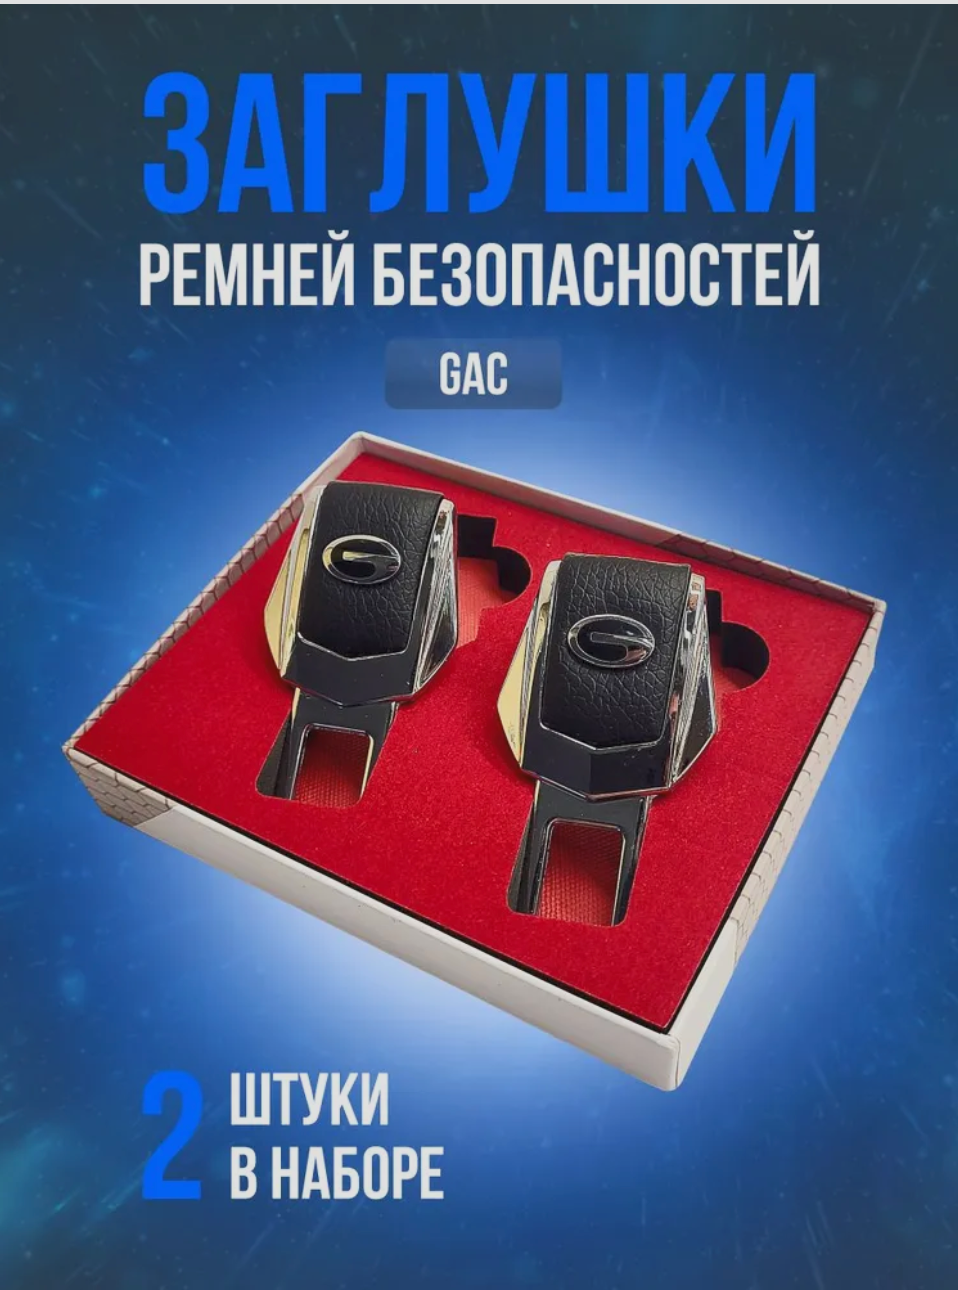 Заглушки для ремней безопасности "GAC" (Гак). Кожа, хром-металл, в подарочной упаковке набор, 2 шт. GN8, GS5, GS8 рестайлинг и другие. PERSONA